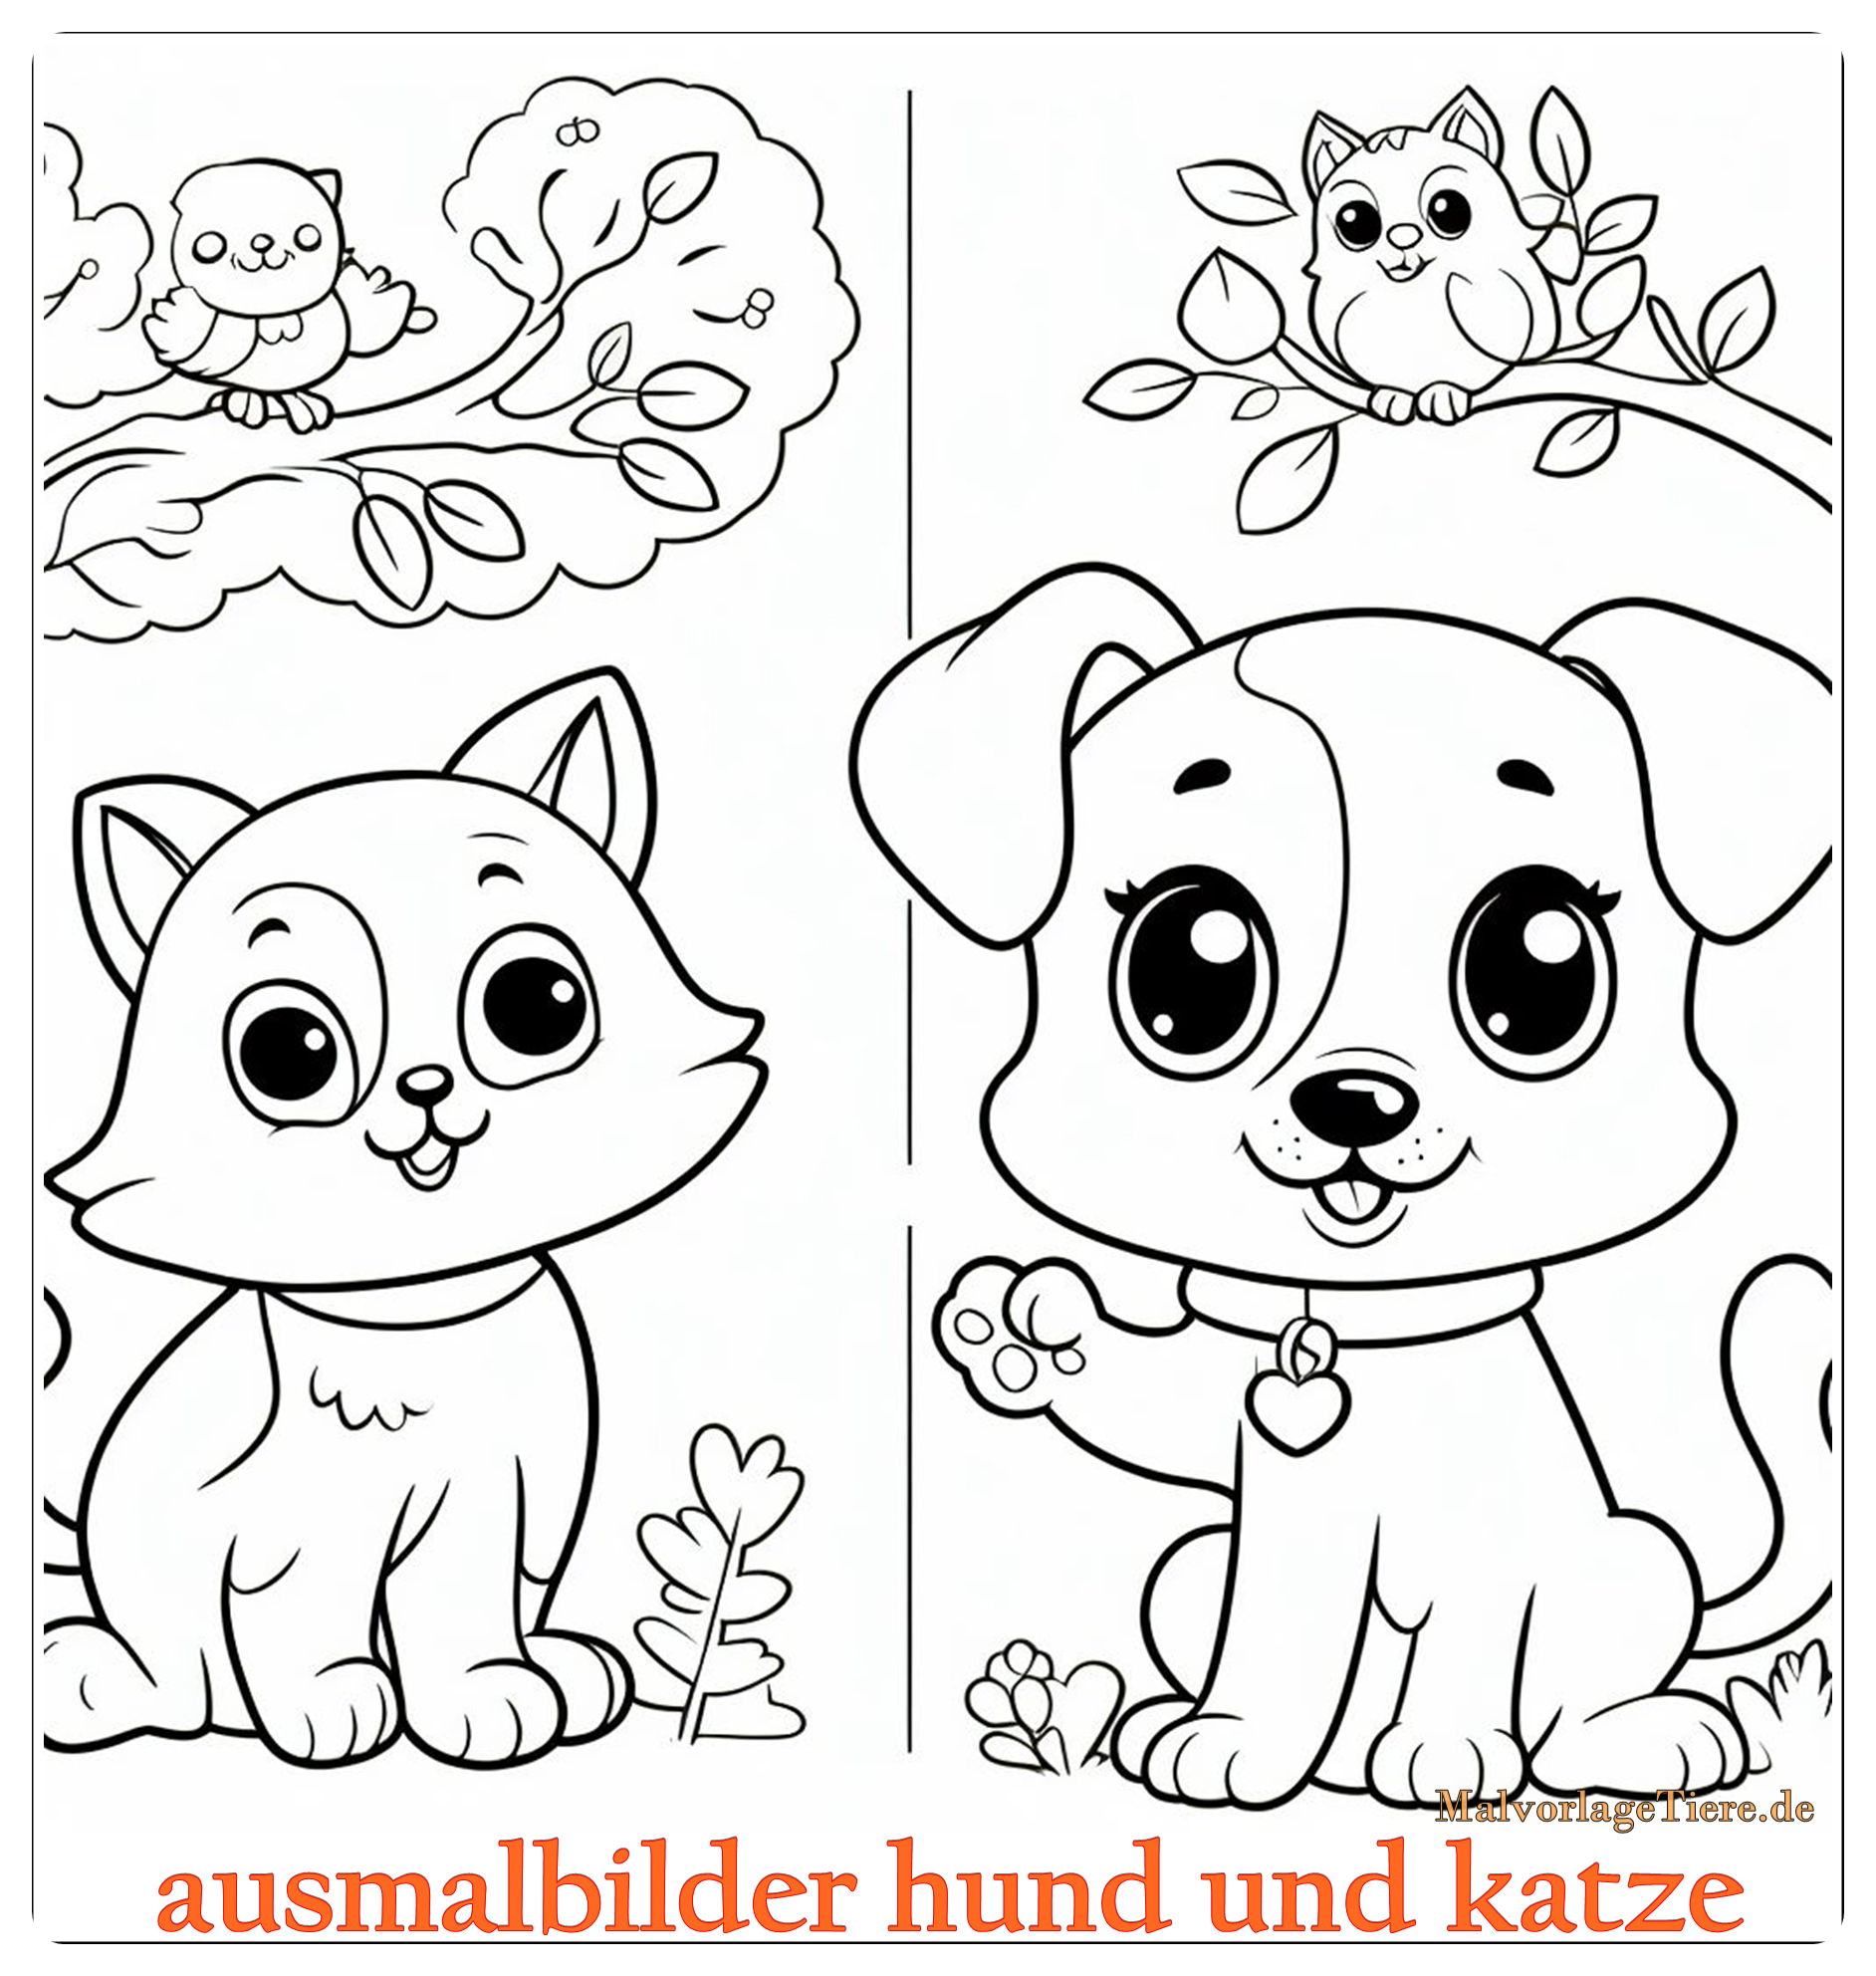 ausmalbilder hund und katze 04 by malvorlagetiere.de